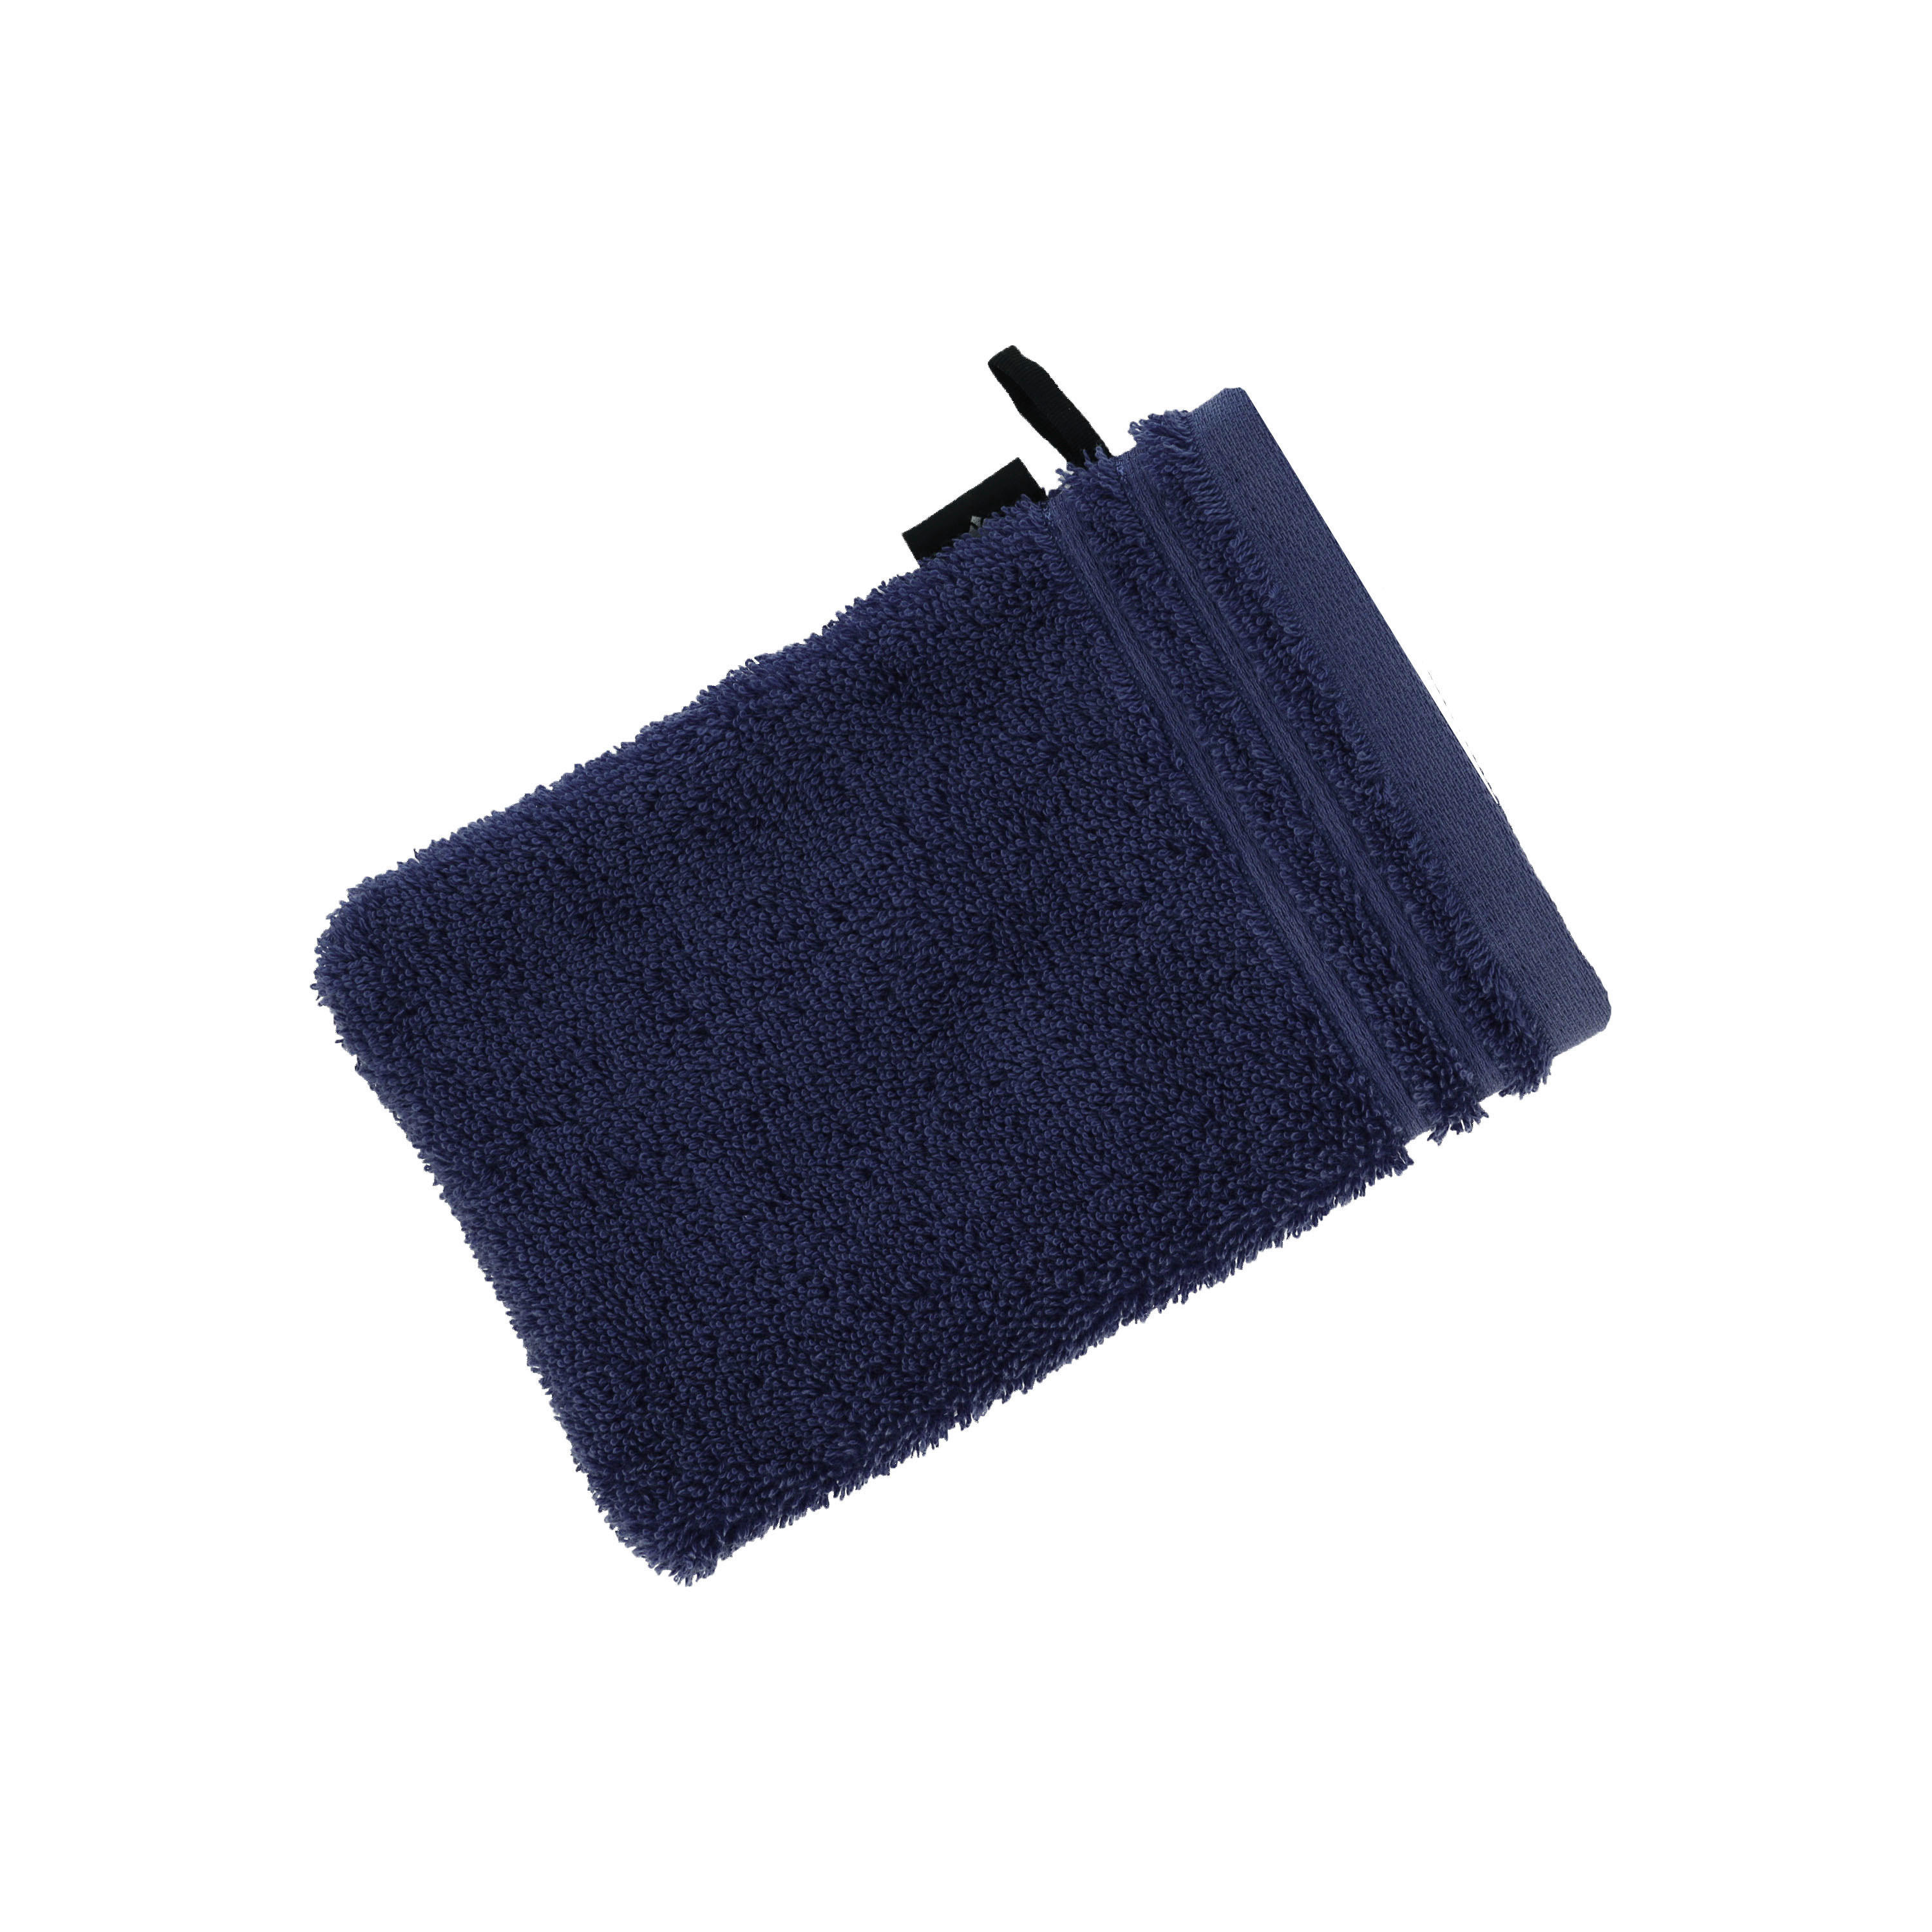 WASCHLAPPEN Calypso Feeling NOS Vossen Wäsche  - Blau, Basics, Textil (16/22cm) - Vossen